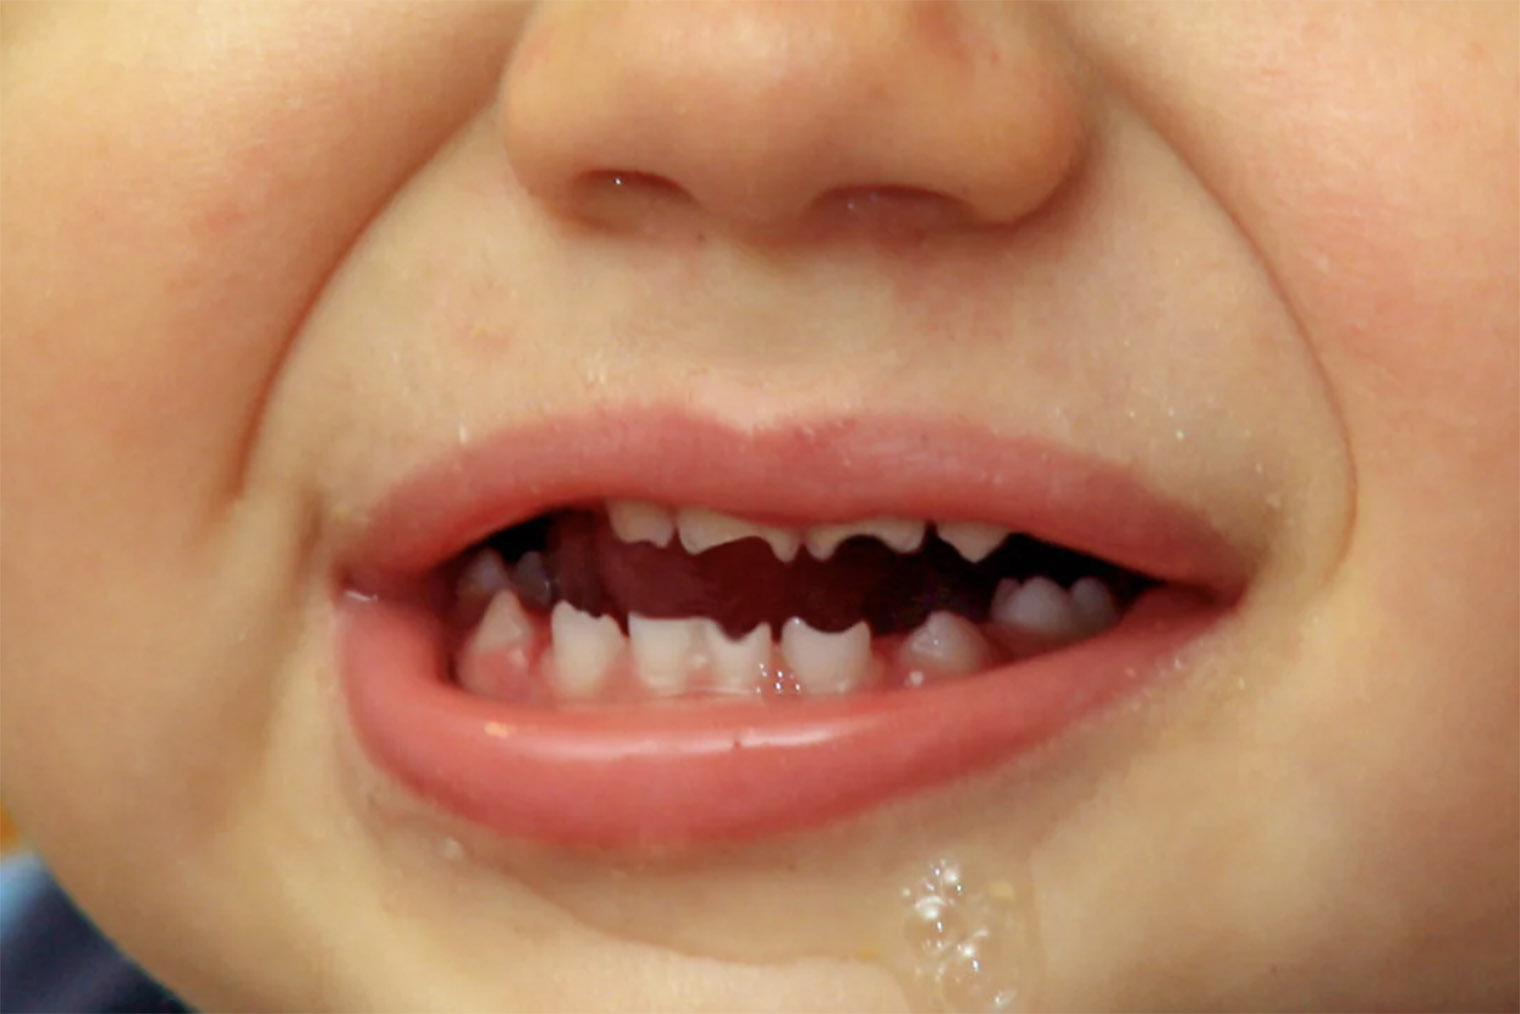 Зазубренные резцы, известные как зубы Хатчинсона, бывают у детей с врожденным сифилисом. Источник: healthline.com